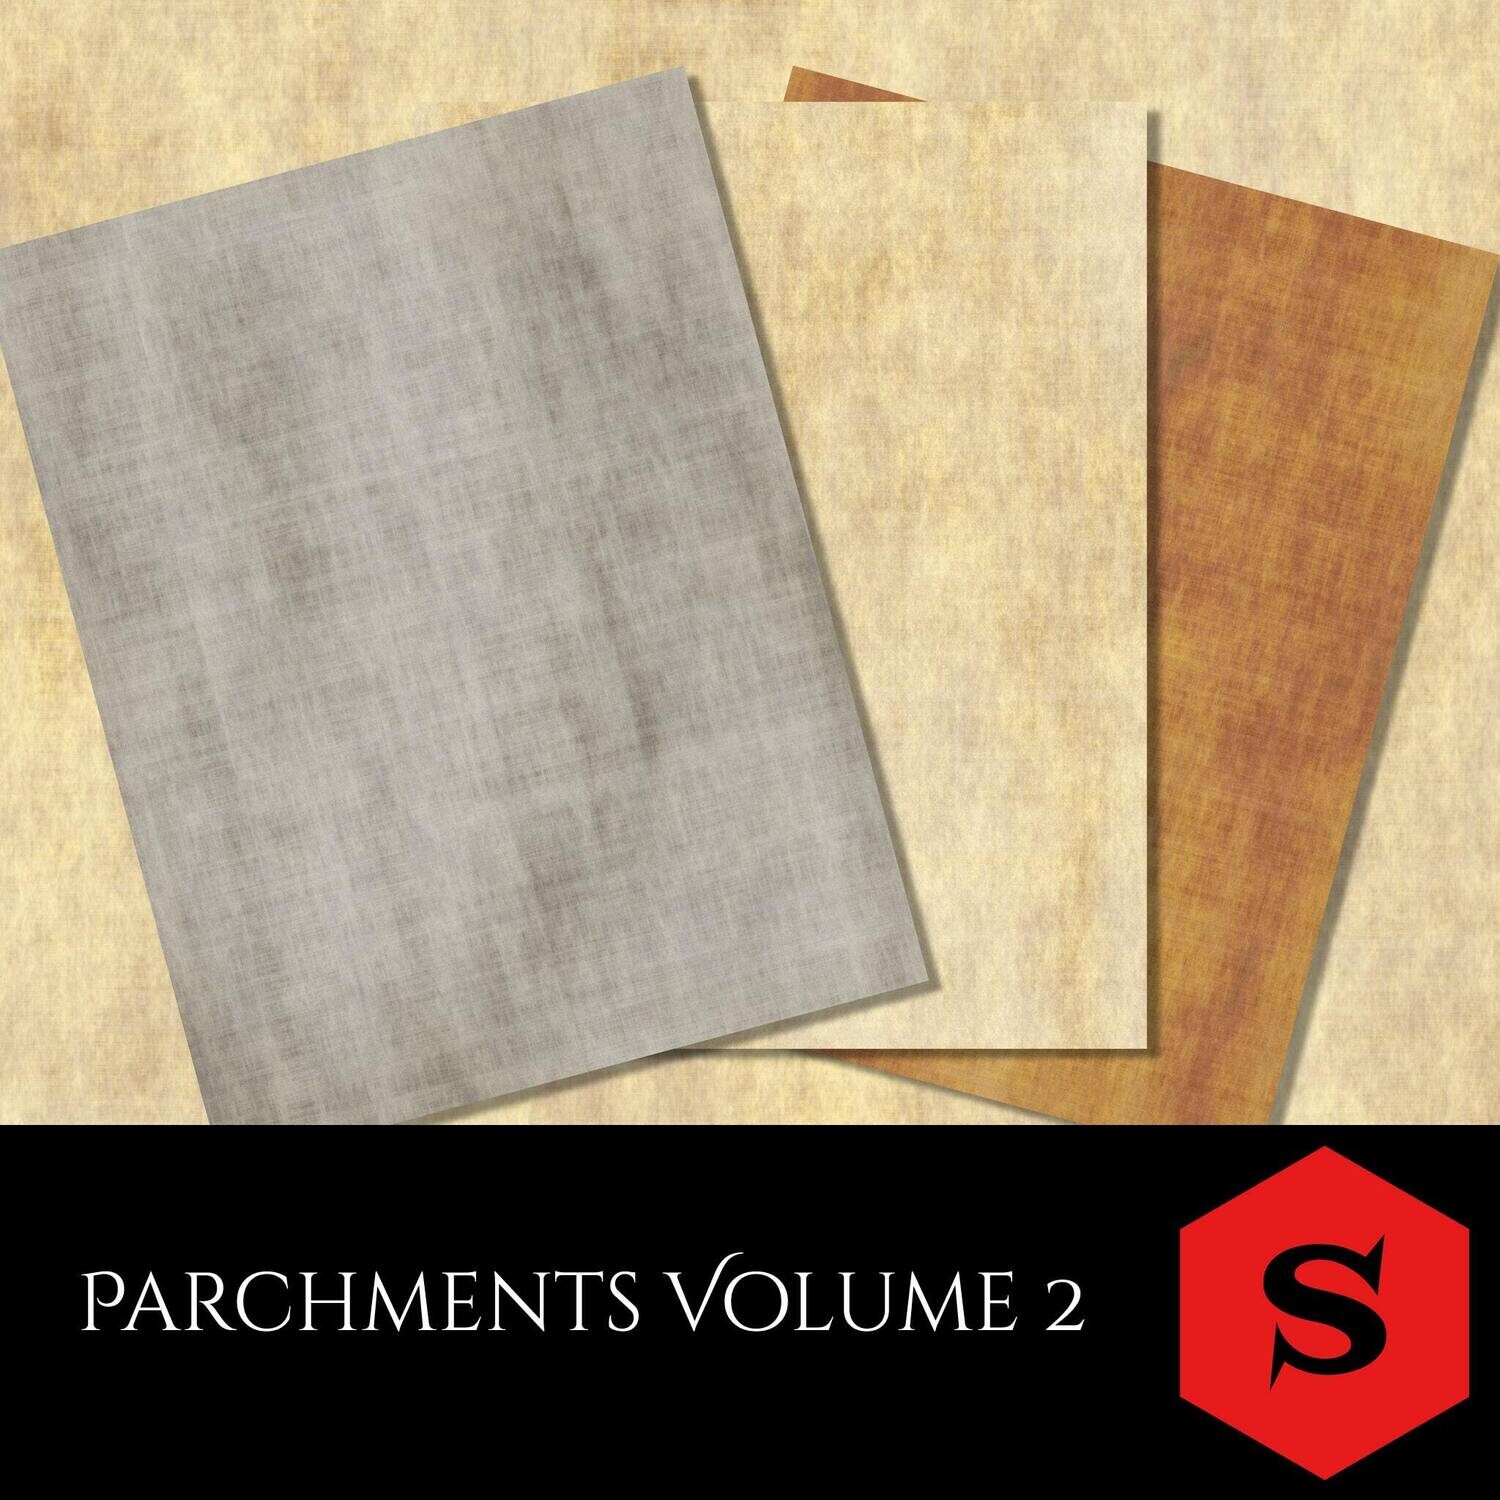 Parchments Volume 2